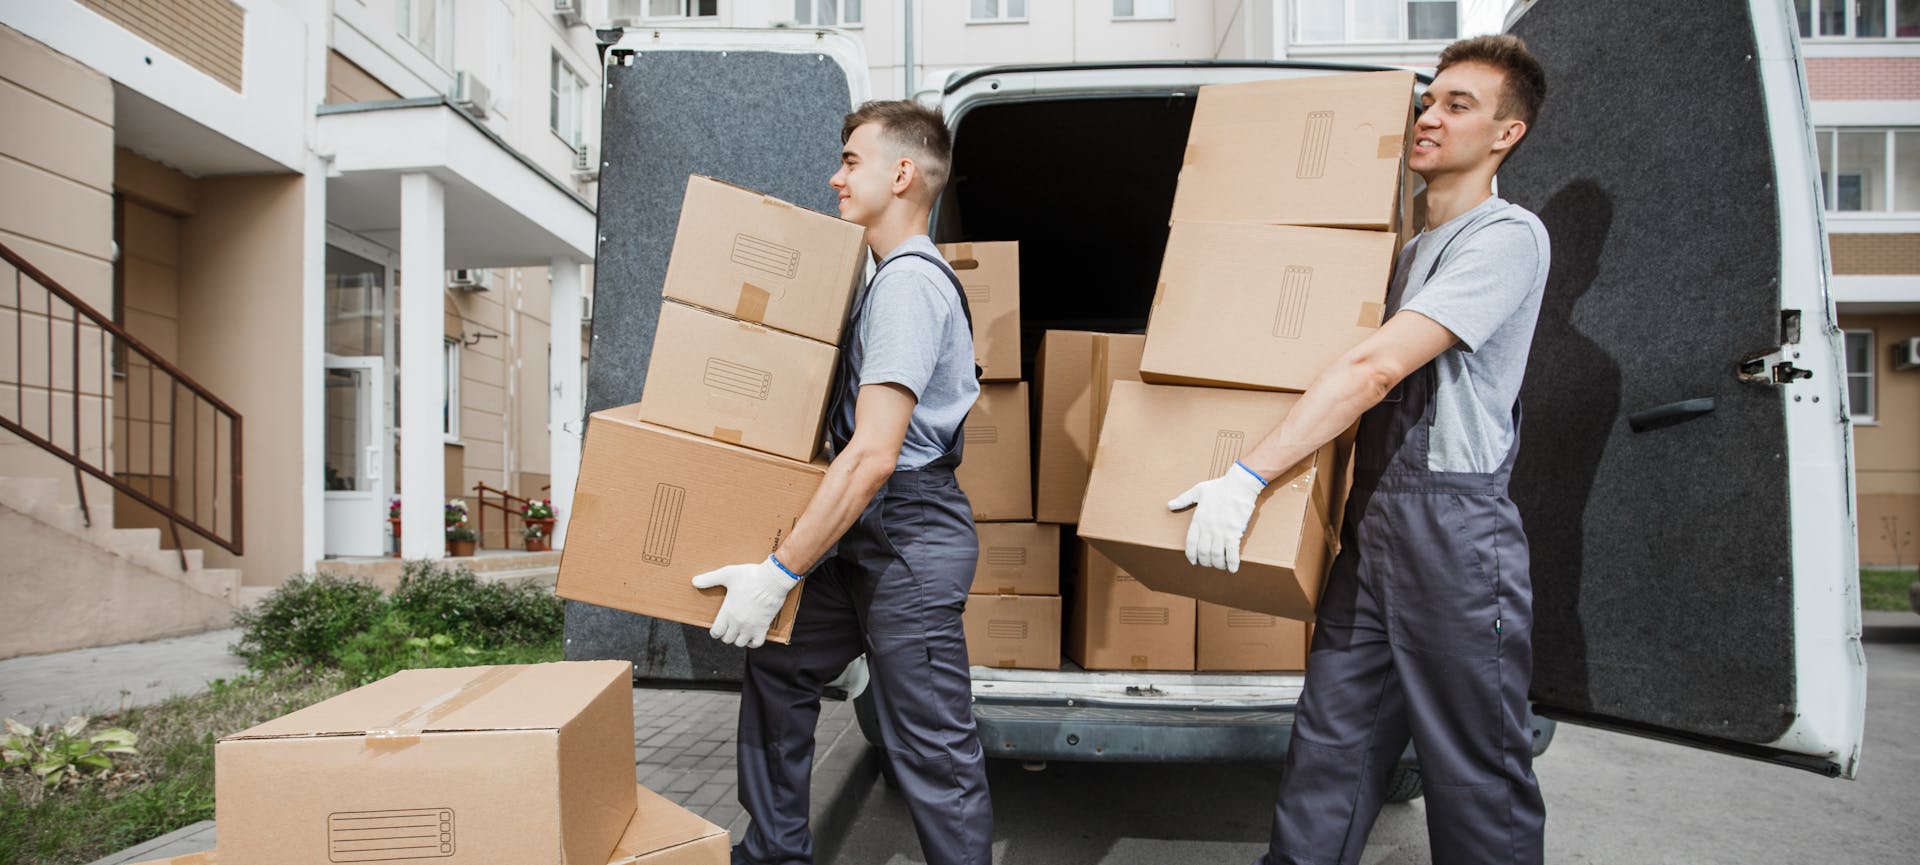 Une aide déménagement qui peut financer le recours à un déménageur professionnel